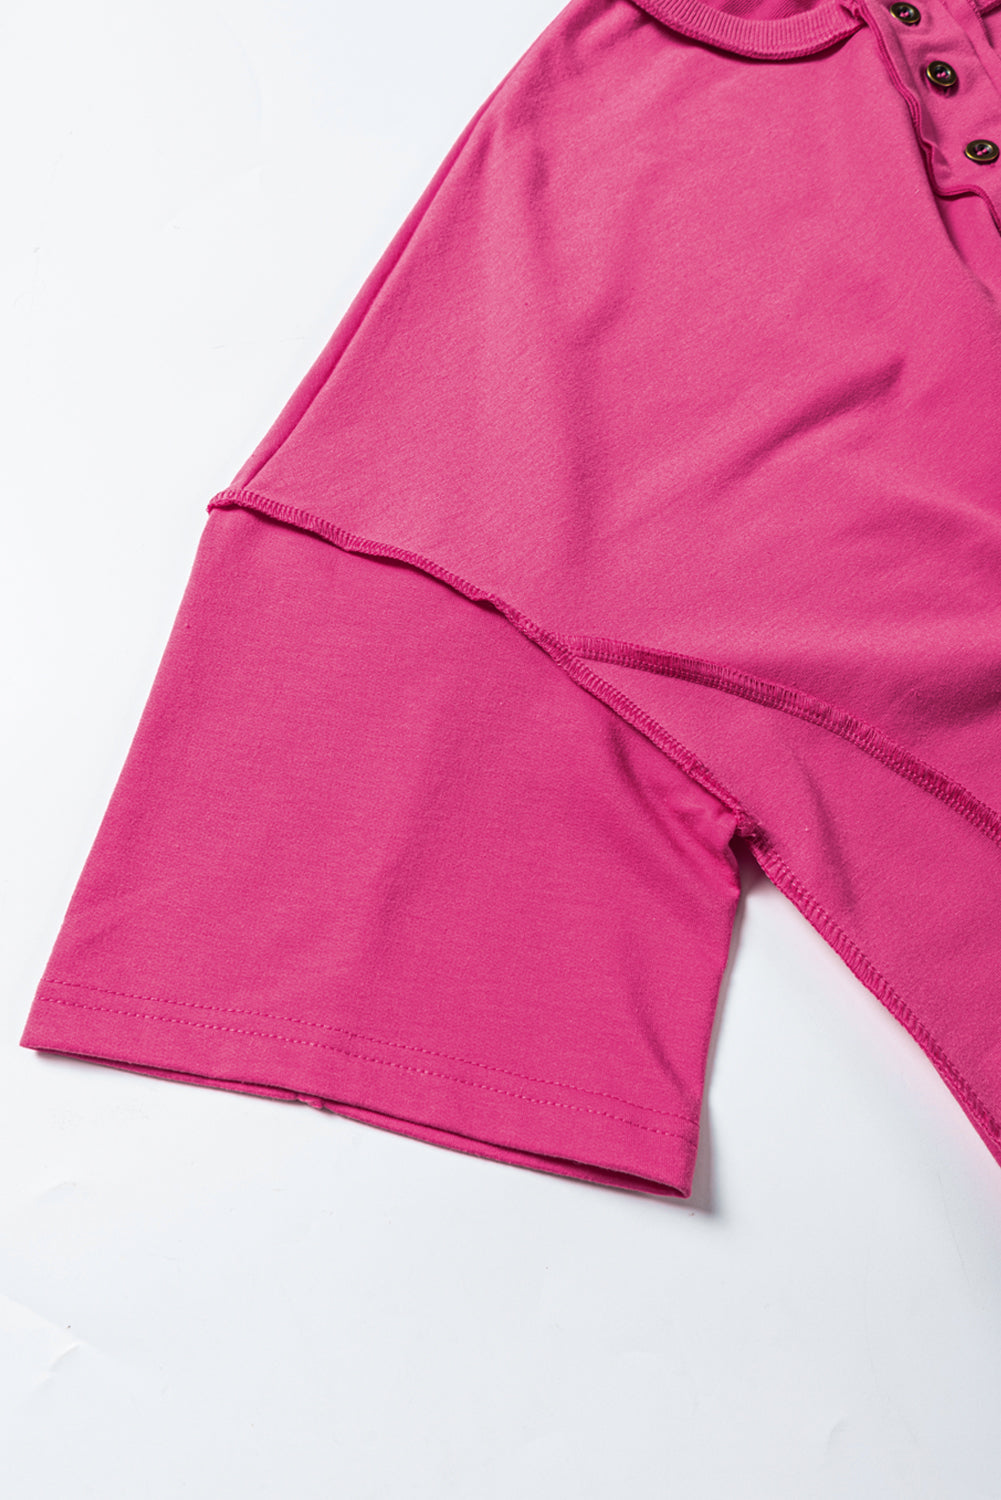 Haut tunique à manches larges et col boutonné avec coutures apparentes rose rouge